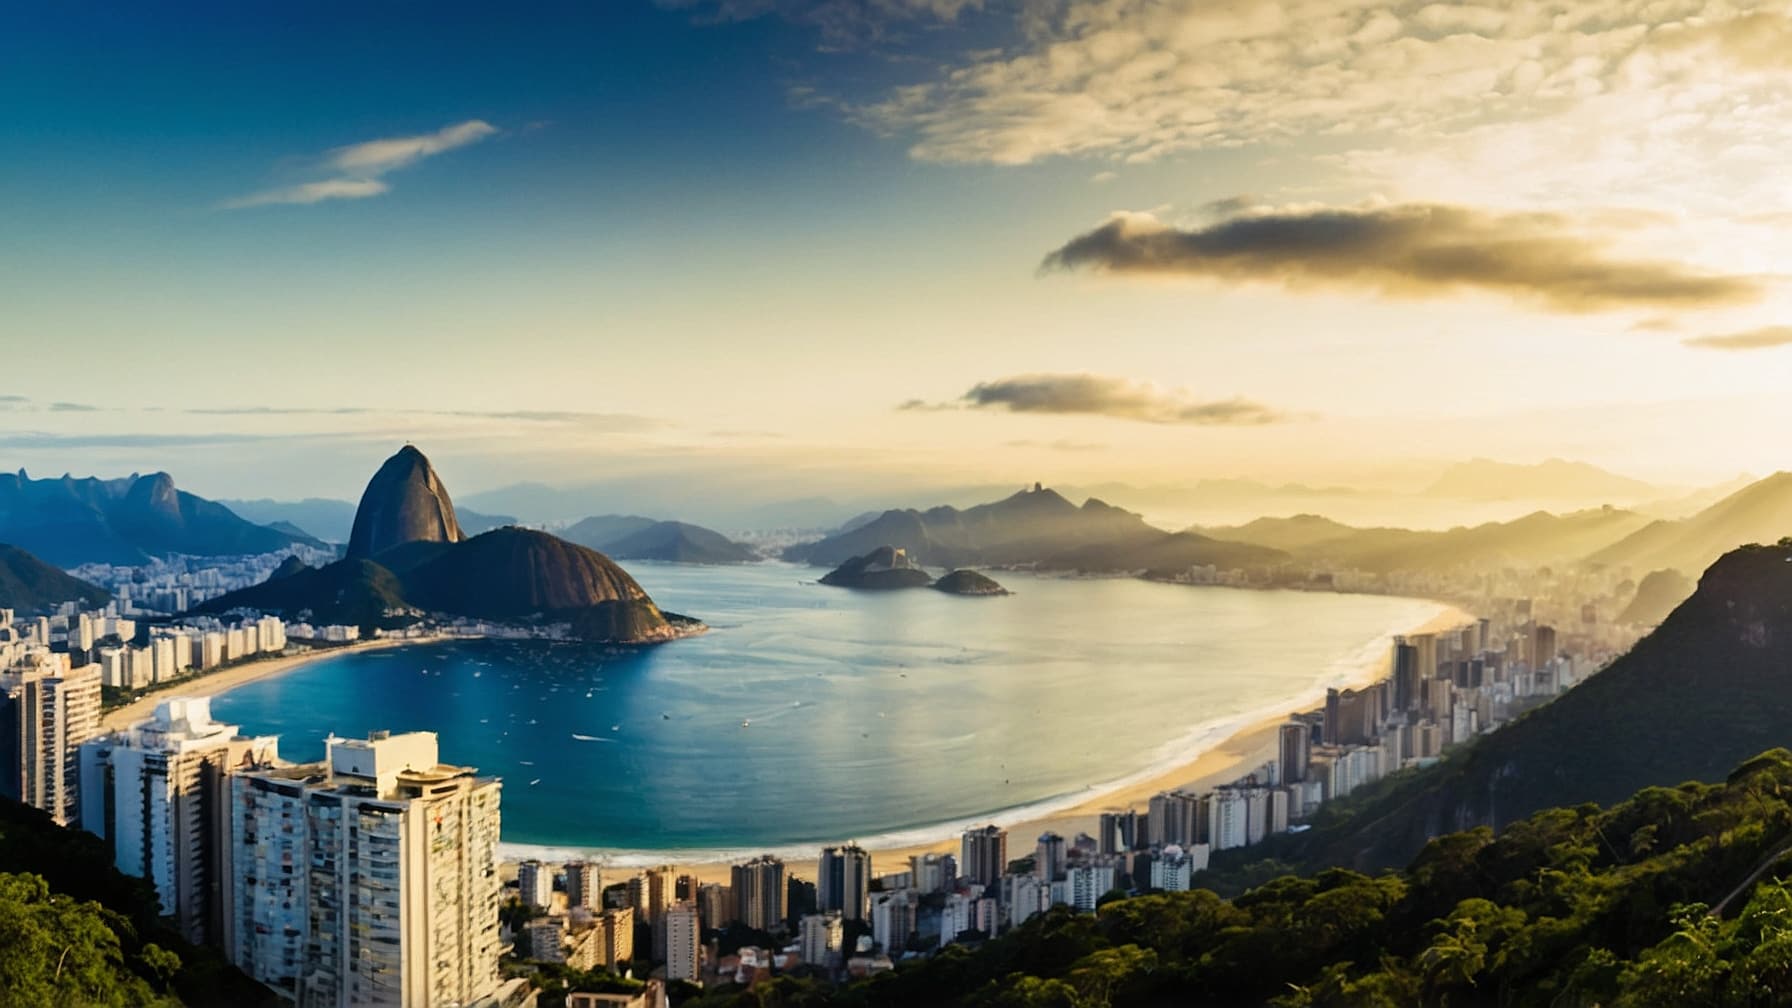 Vista aérea do Rio de Janeiro mostrando suas belas praias e o Cristo Redentor ao fundo. Passagens baratas para o Rio de Janeiro no Voopter